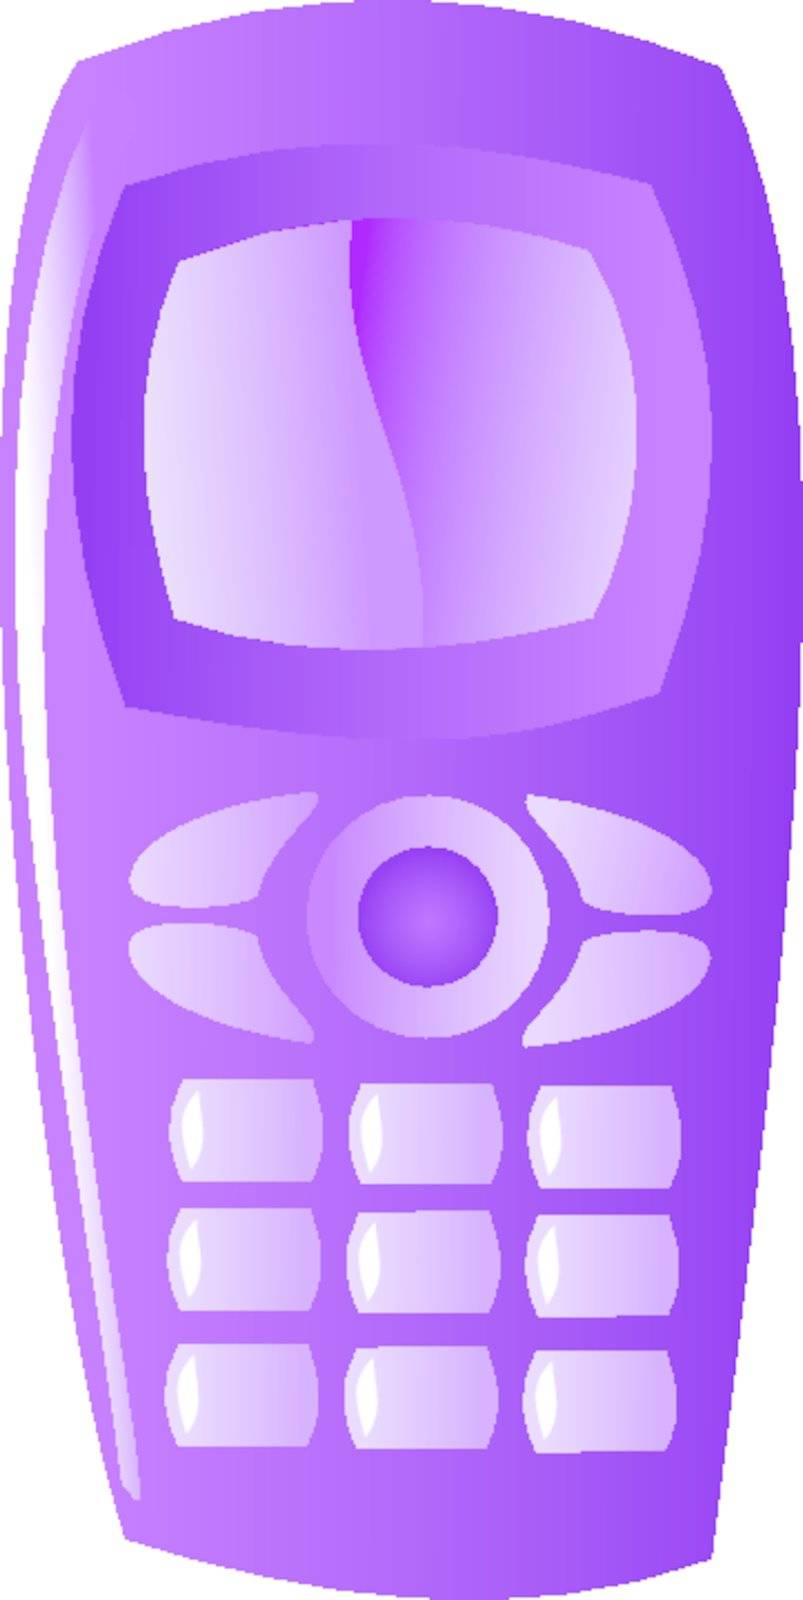 symbolic illustration of mobile phone